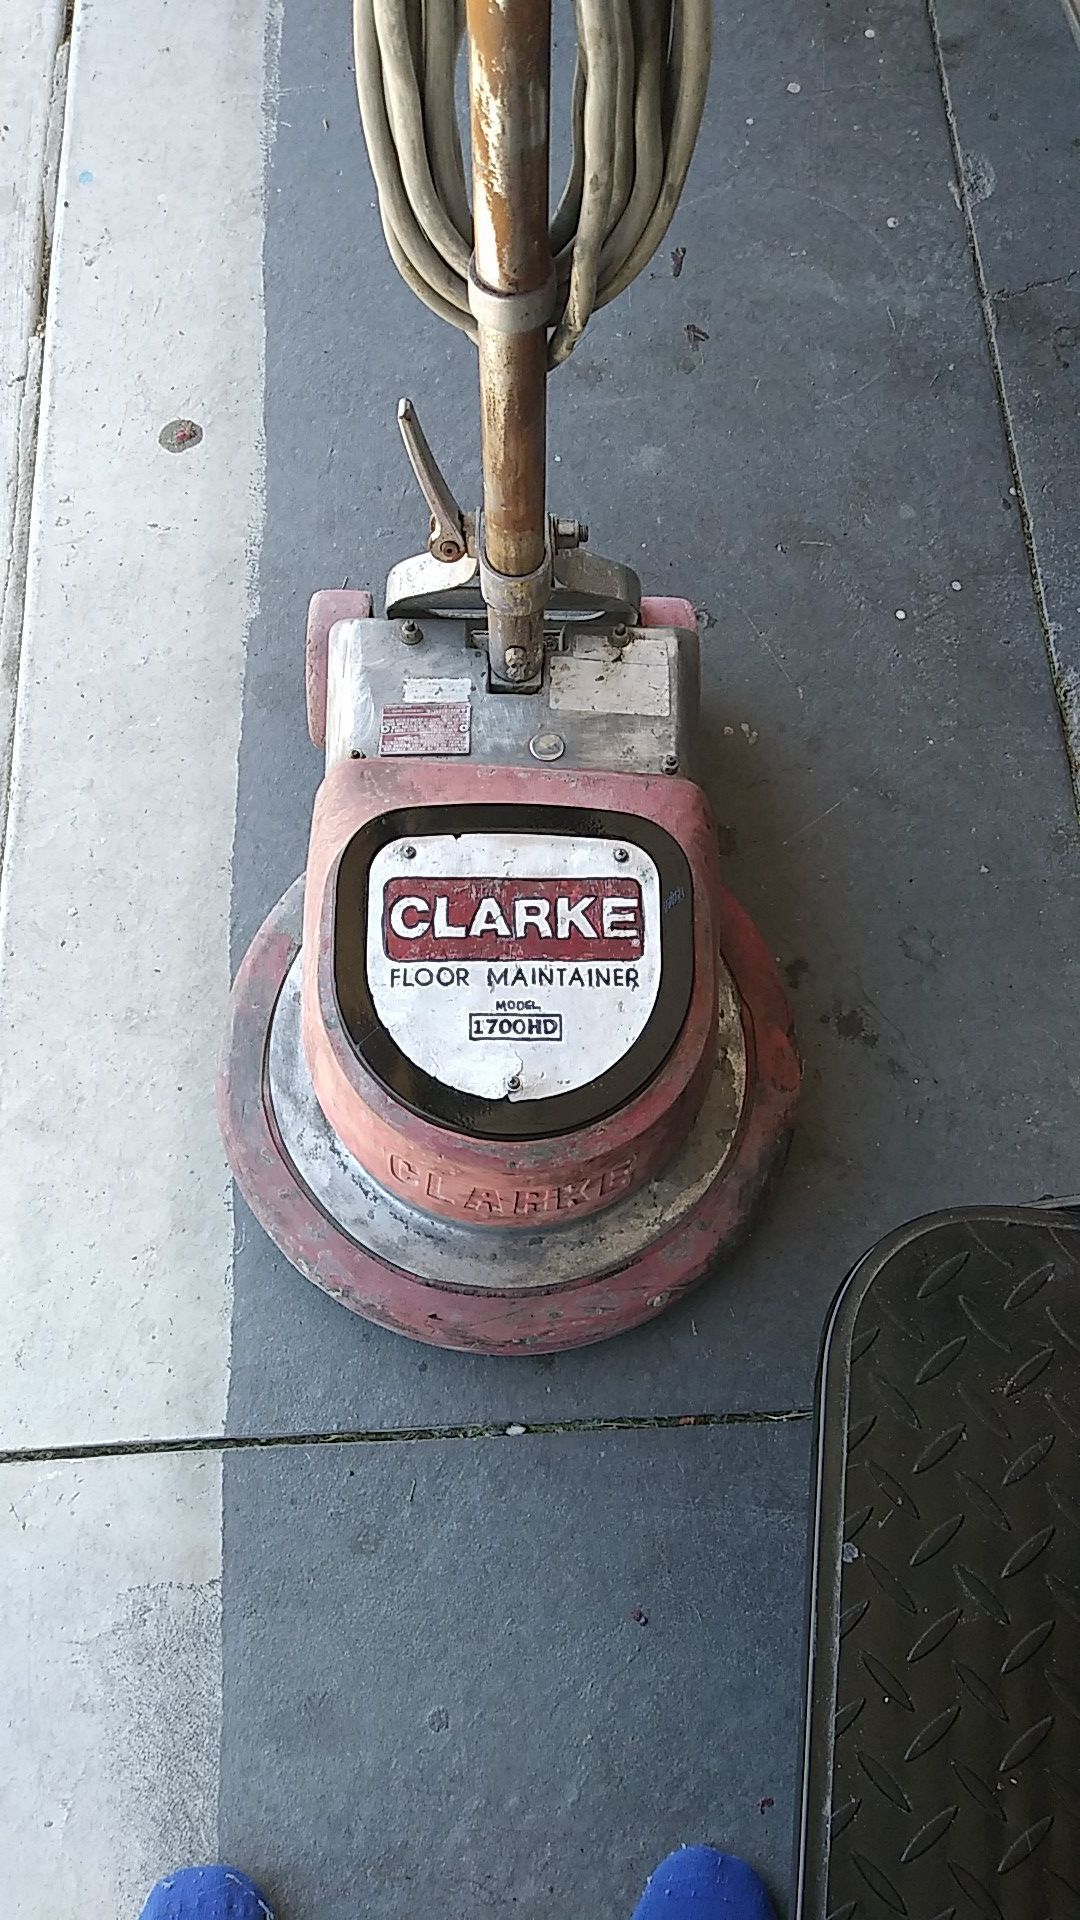 Clarke floor maintainer model 1700HD